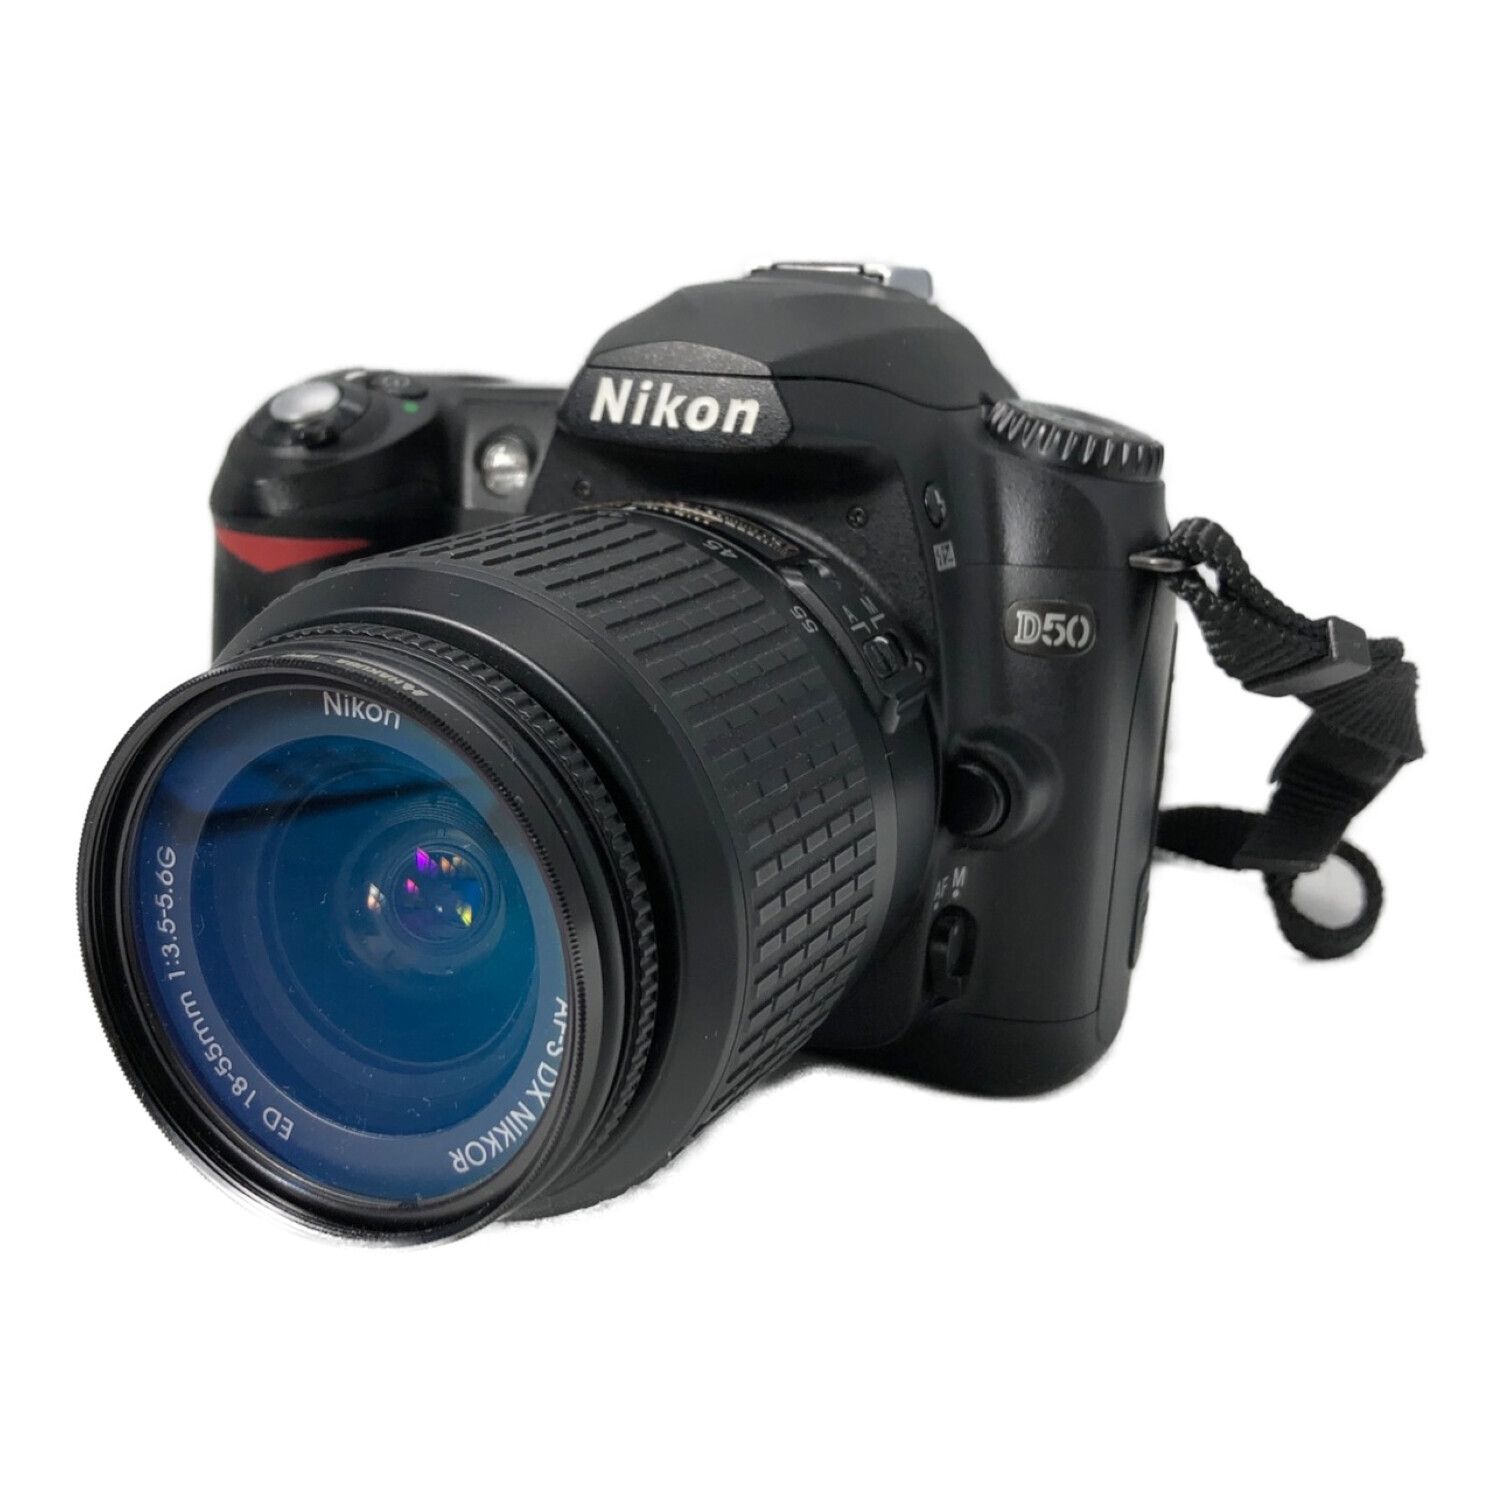 Nikon (ニコン) 一眼レフカメラ レンズ:18-55mm D50 レンズセット 624